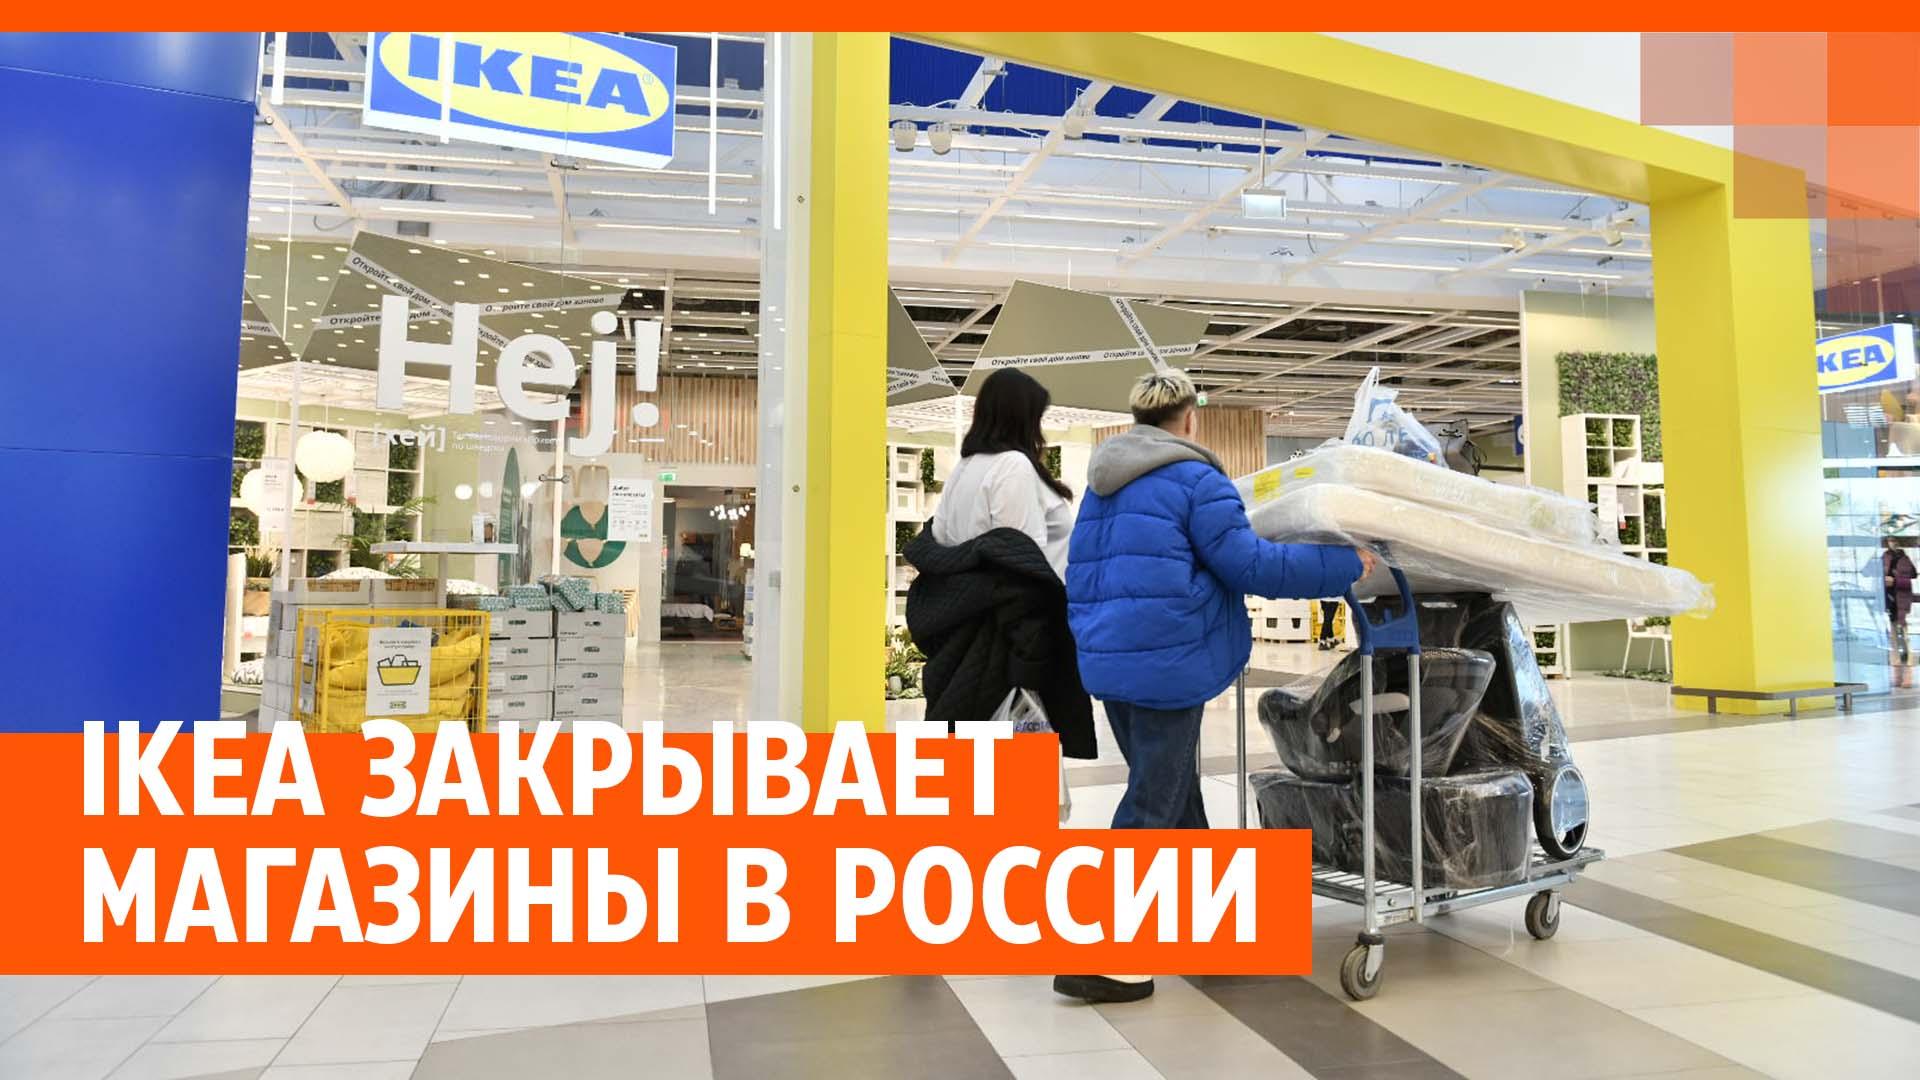 Работа продавец в интим магазин в Уфе - 1 вакансия и с зарплатой до 35000 руб..